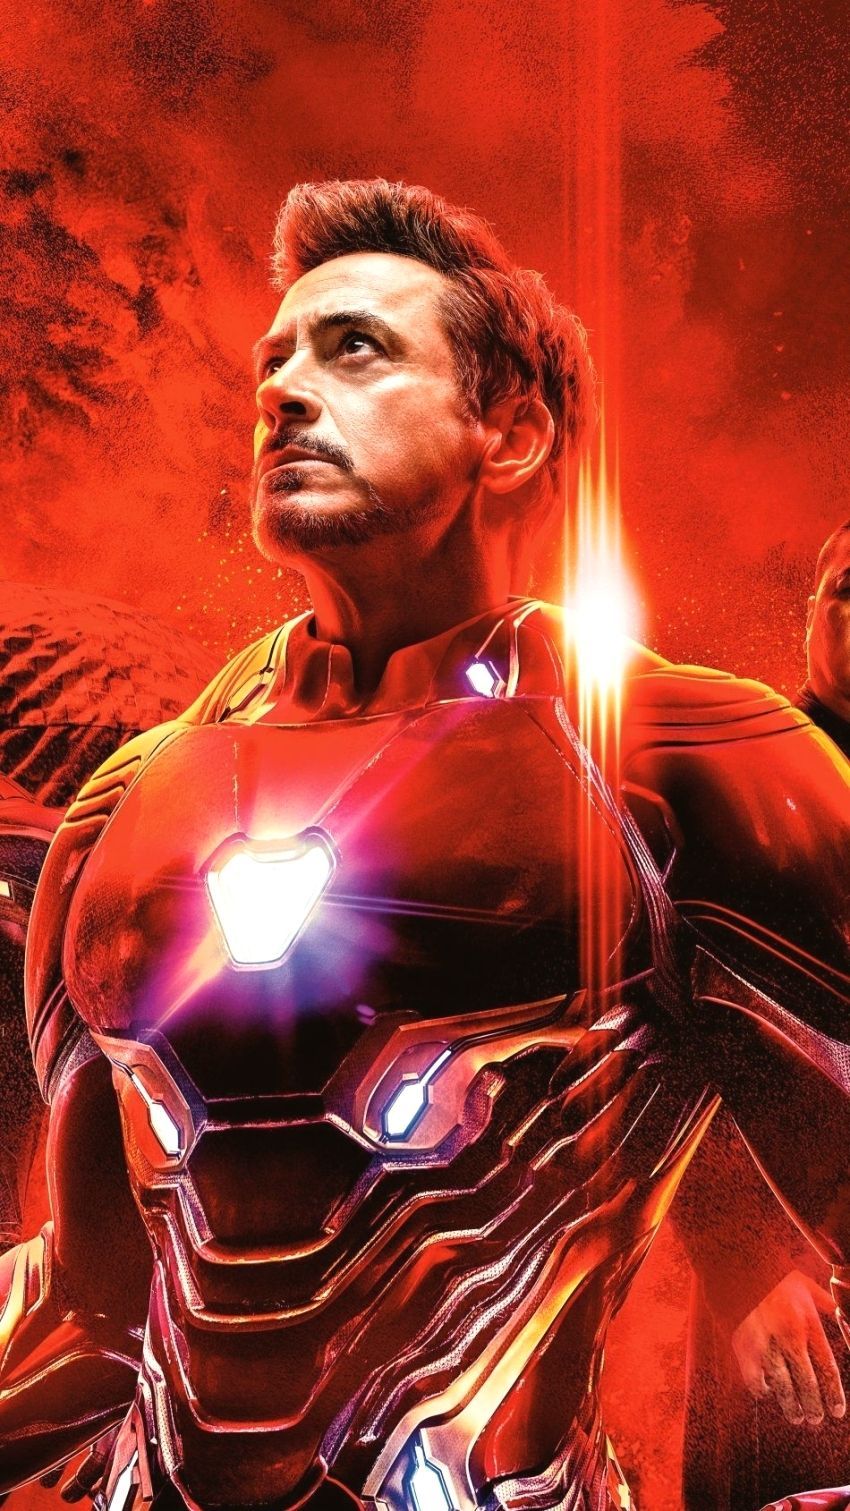 Iron Man In Avengers Endgame 4k Ultra HD Mobile Wallpaper Wallpaper Iron Man Endgame